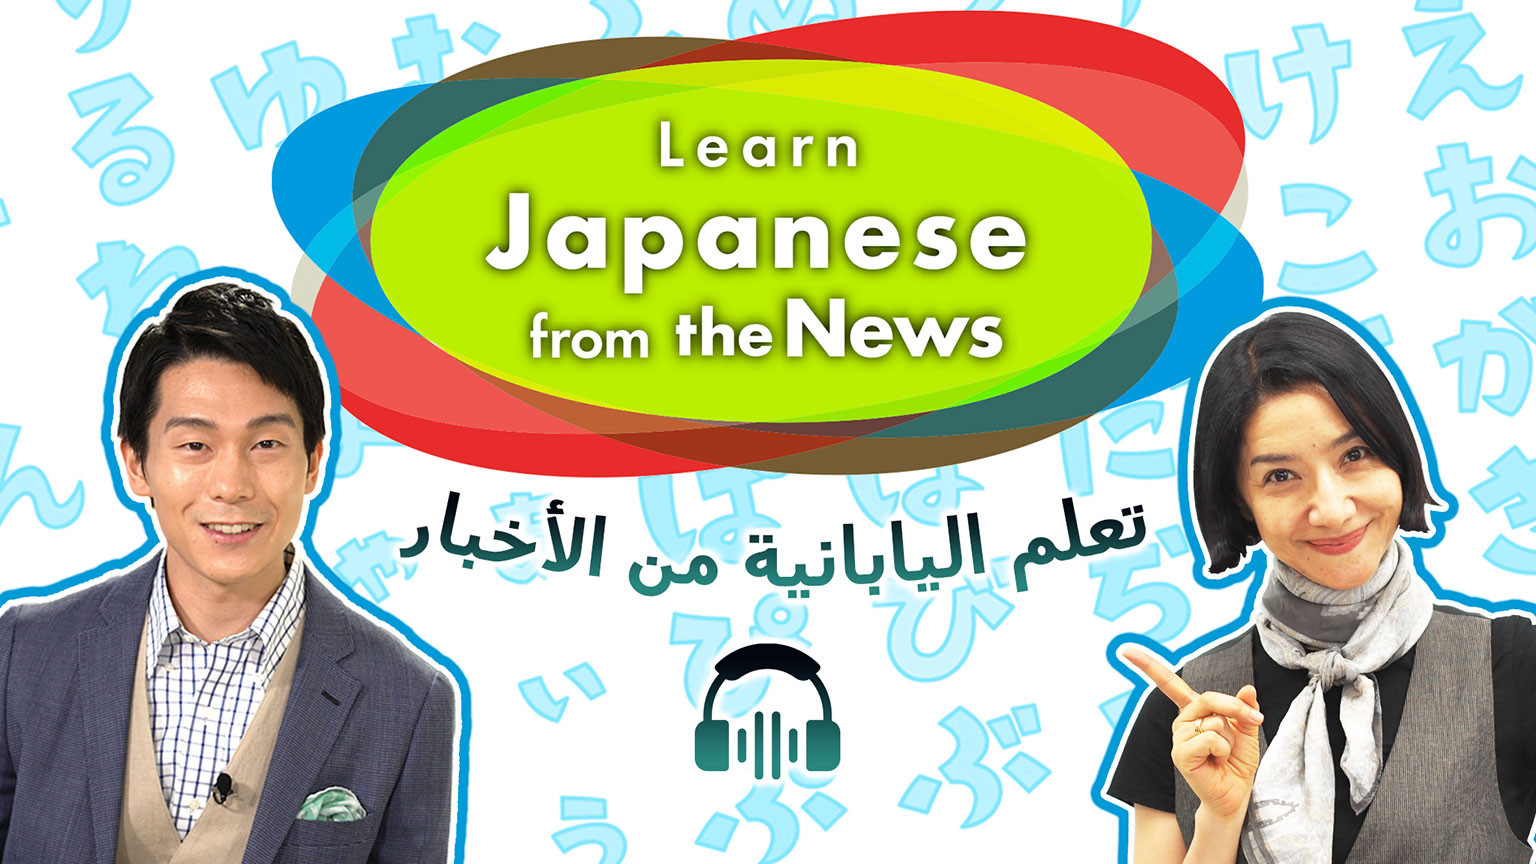 تعلم اليابانية من الأخبار